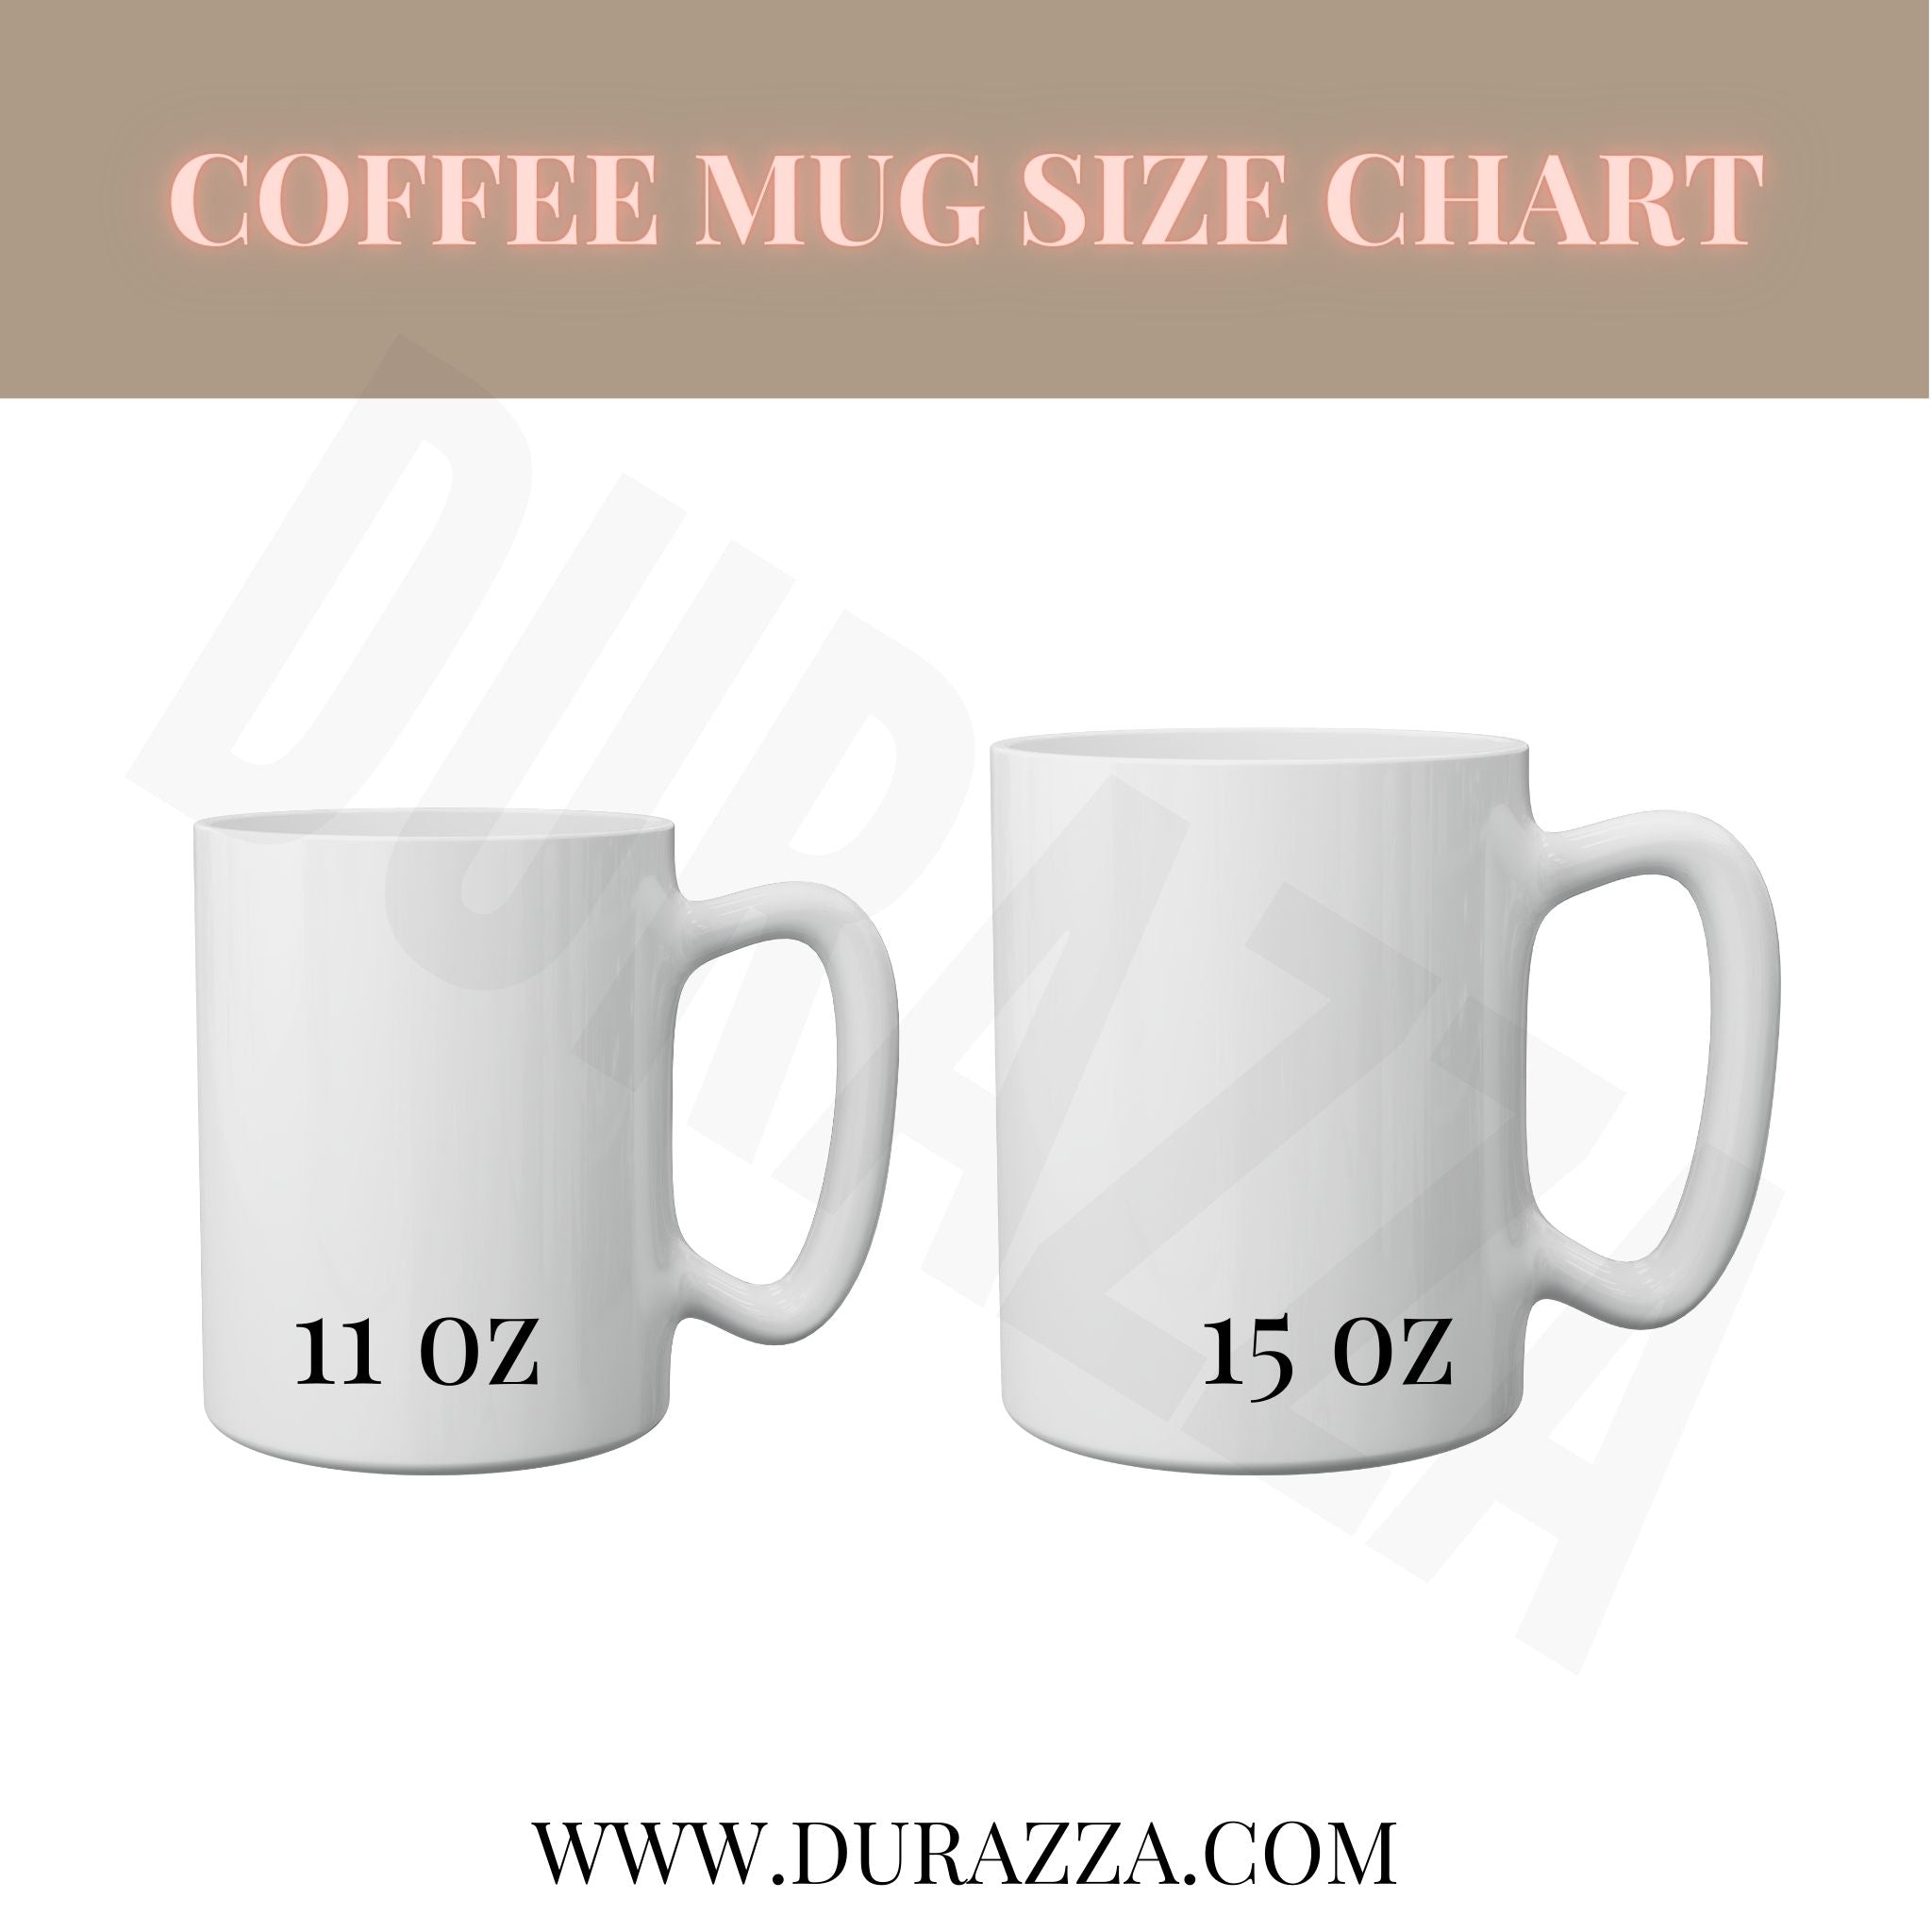 Murder She Wrote Coffee Mug in Metallic Gold 11 oz  Size Chart